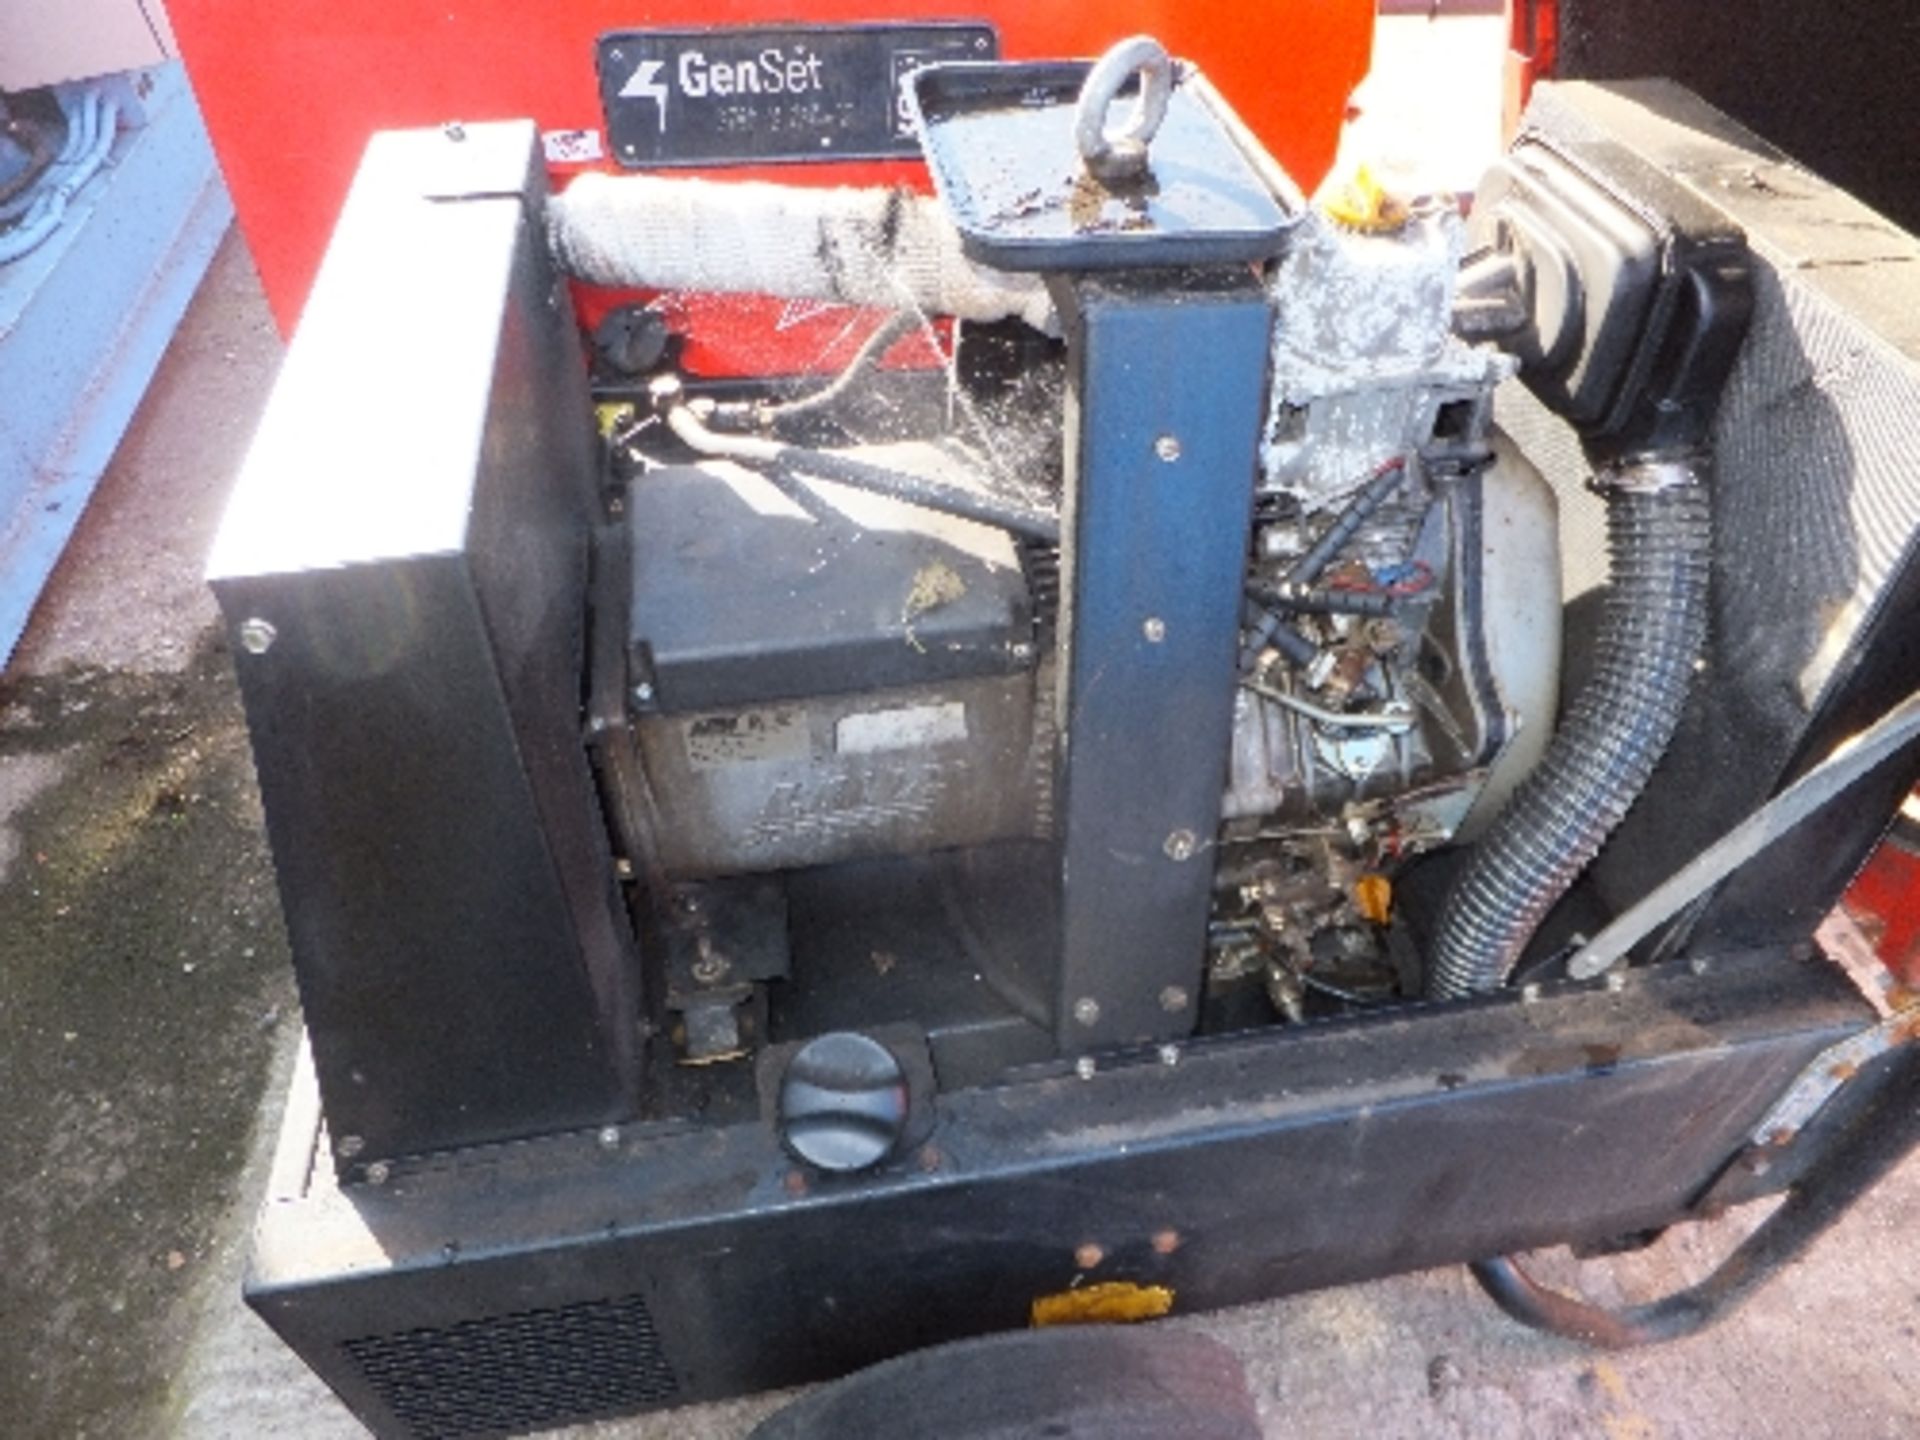 Genset MG6 diesel generator - Image 2 of 3